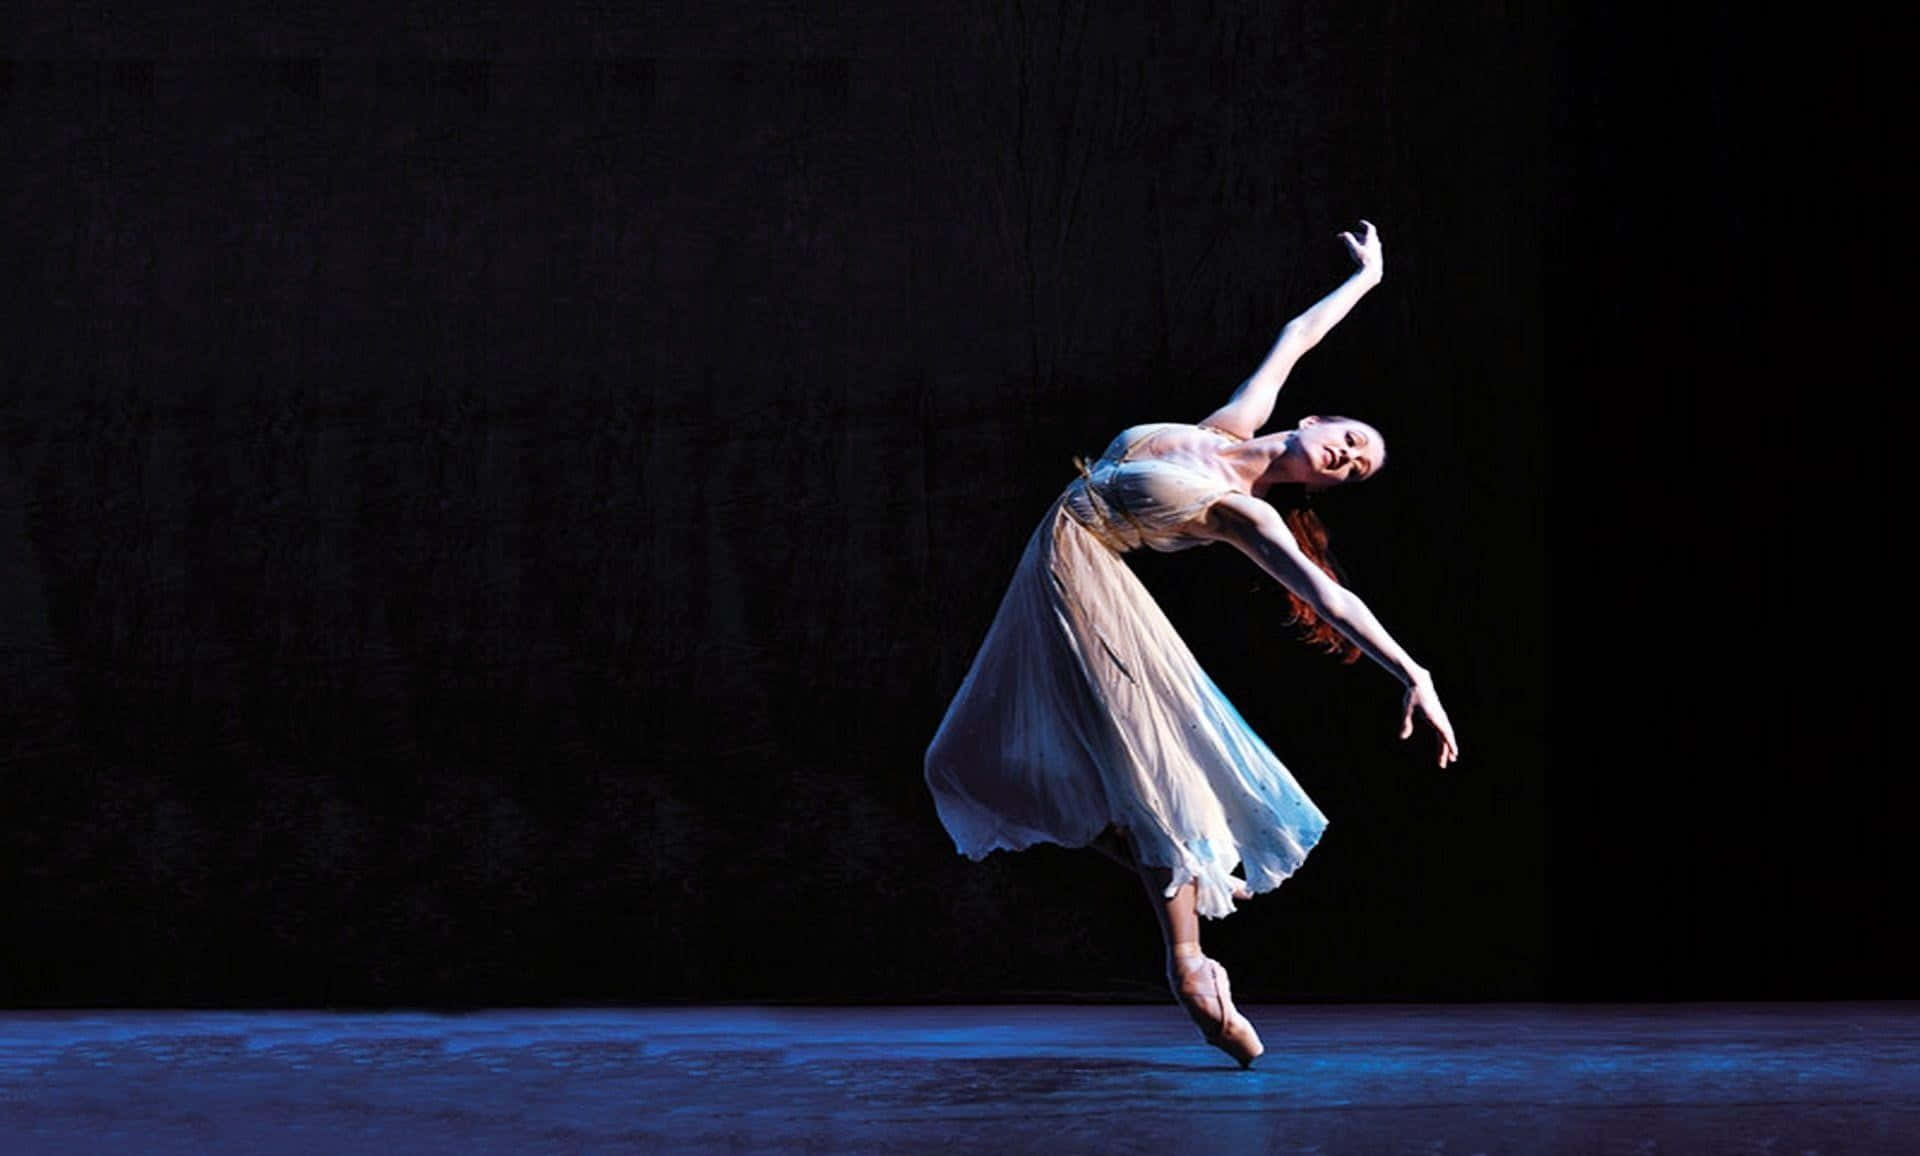 Female Ballet Dancer Gracefully Executing a Pas De Cheval